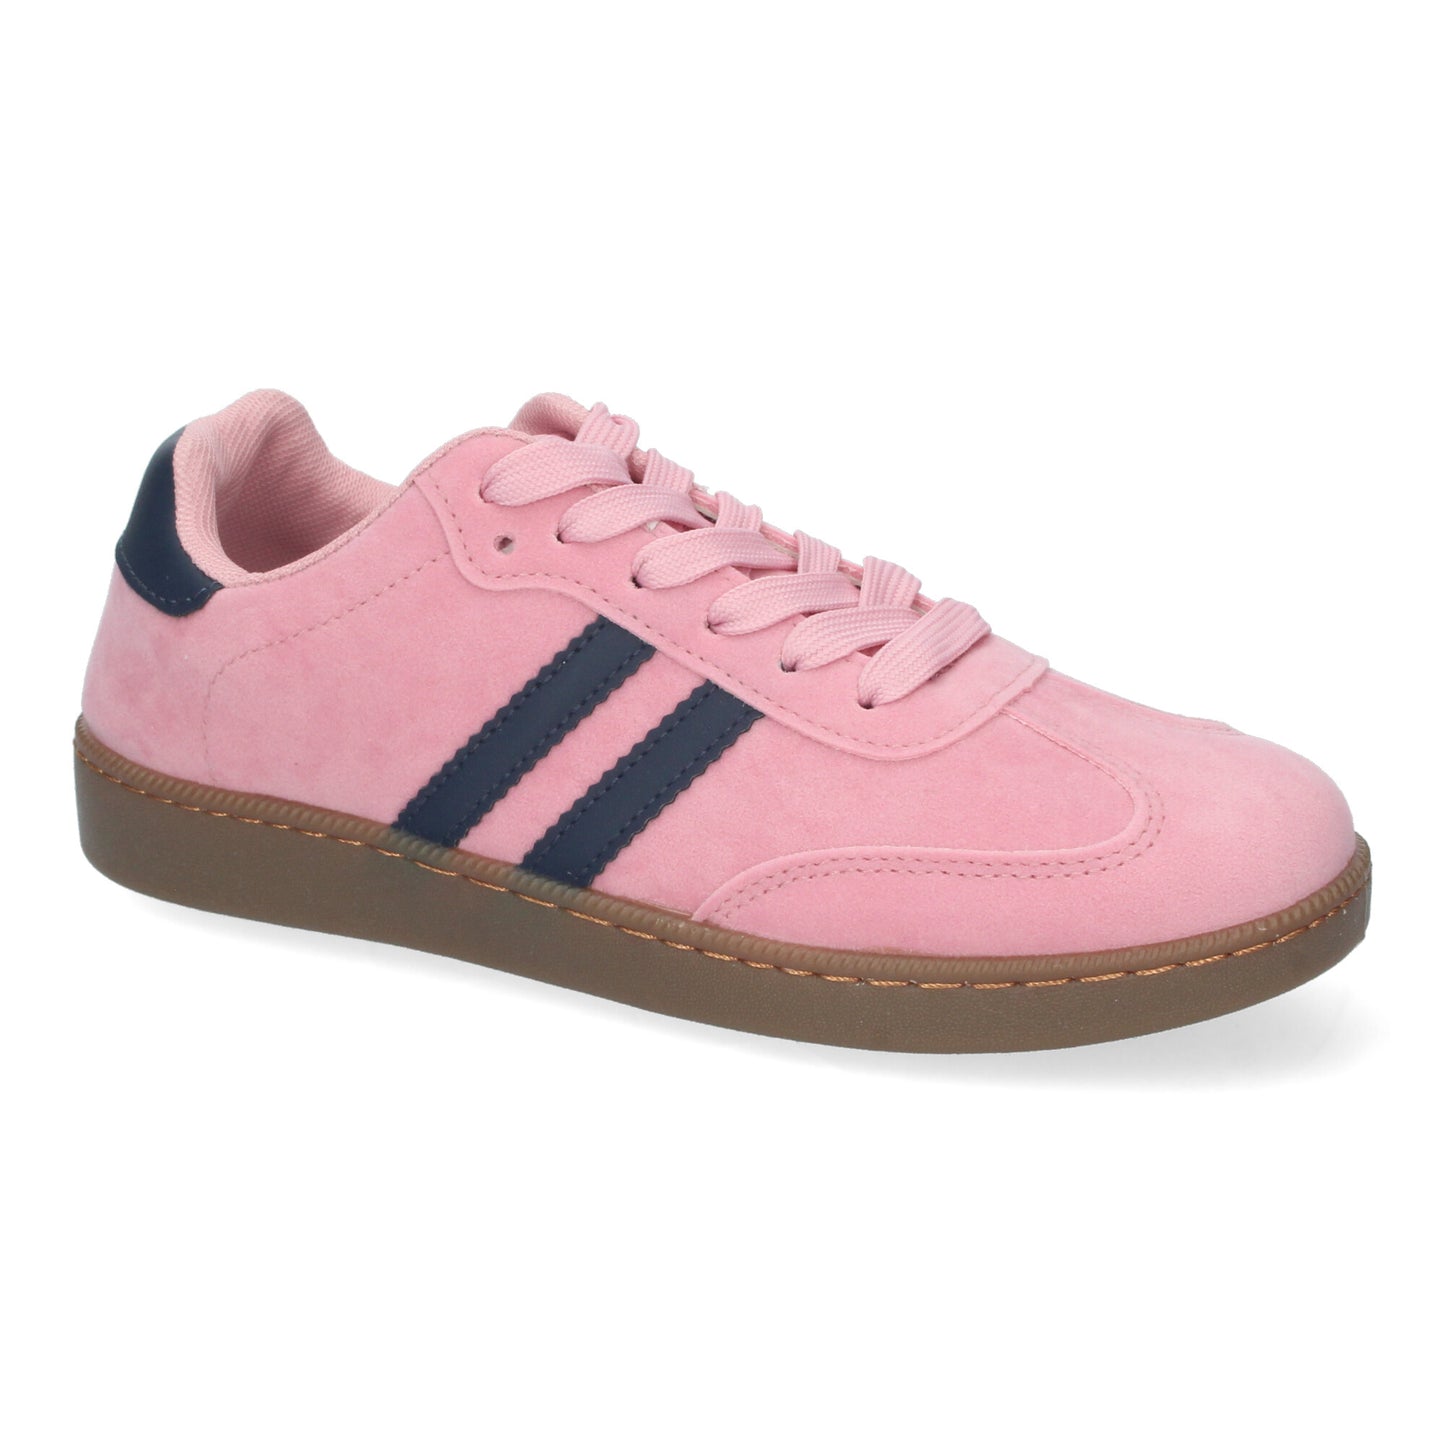 Zapatillas planas deportivas rosas